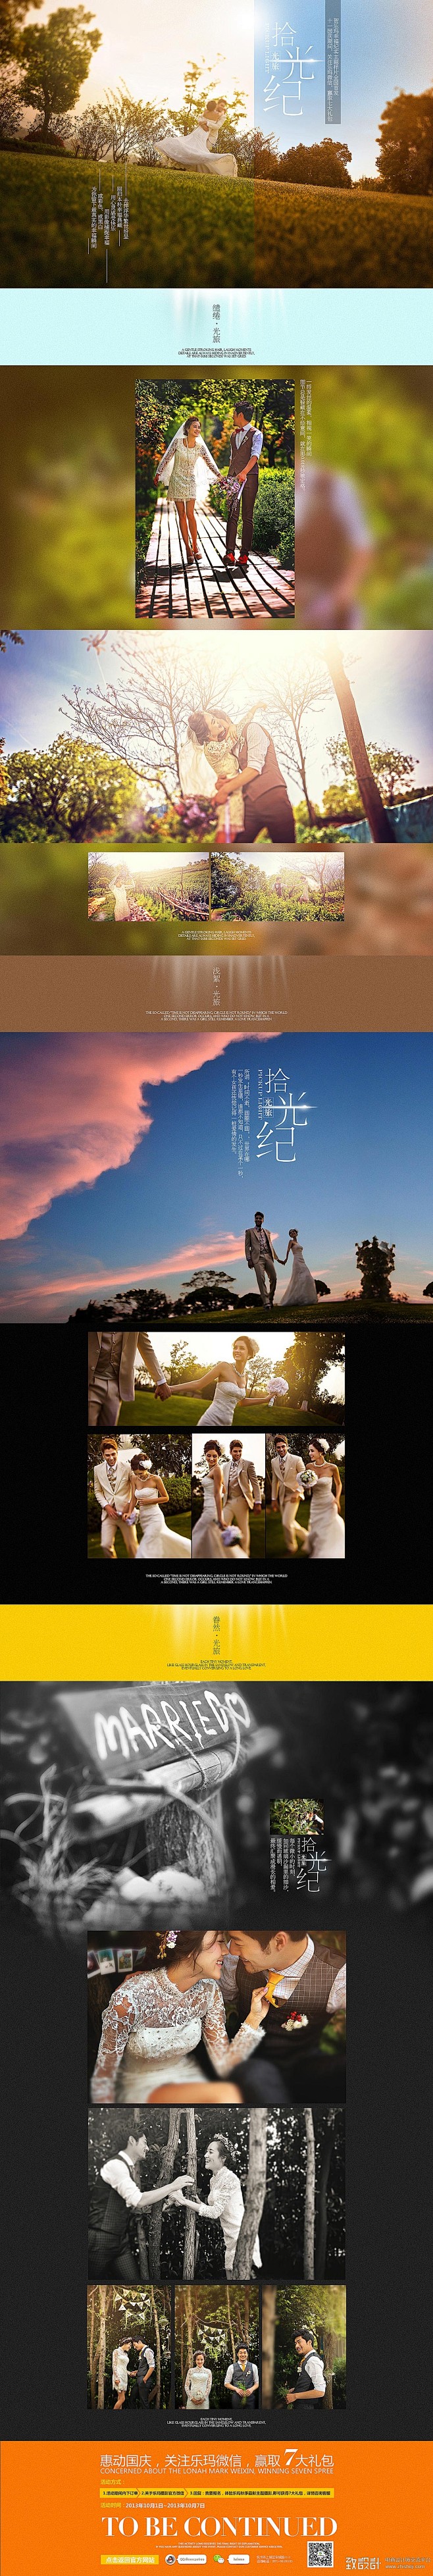 婚纱摄影专题设计欣赏,致设计-中国最大的...